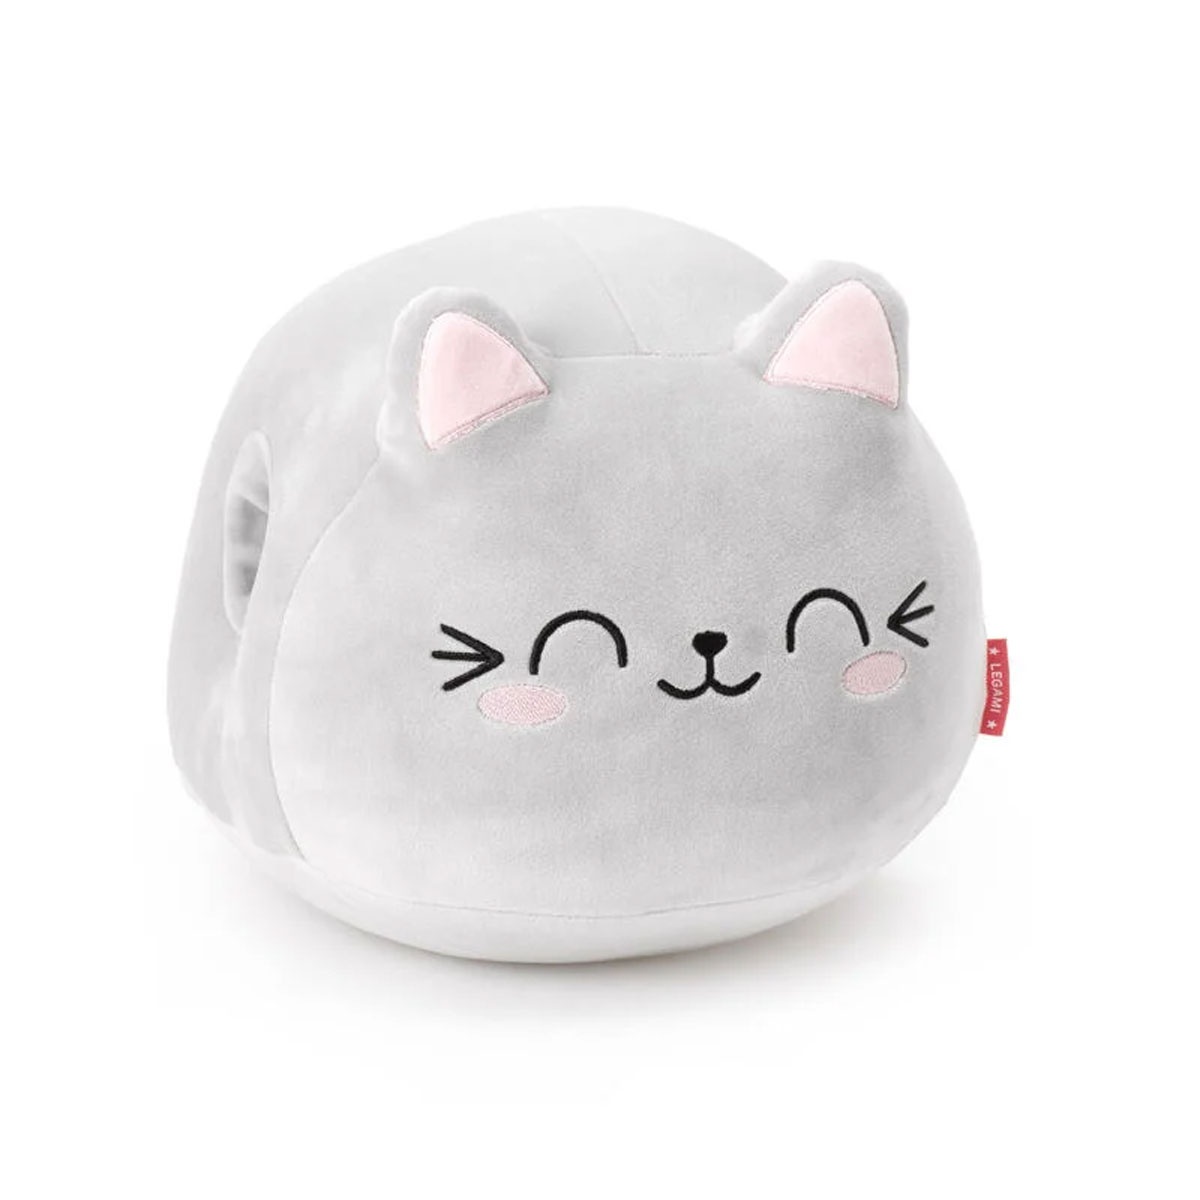 Kissen - Super Soft! Kuschelkissen Katze von Legami